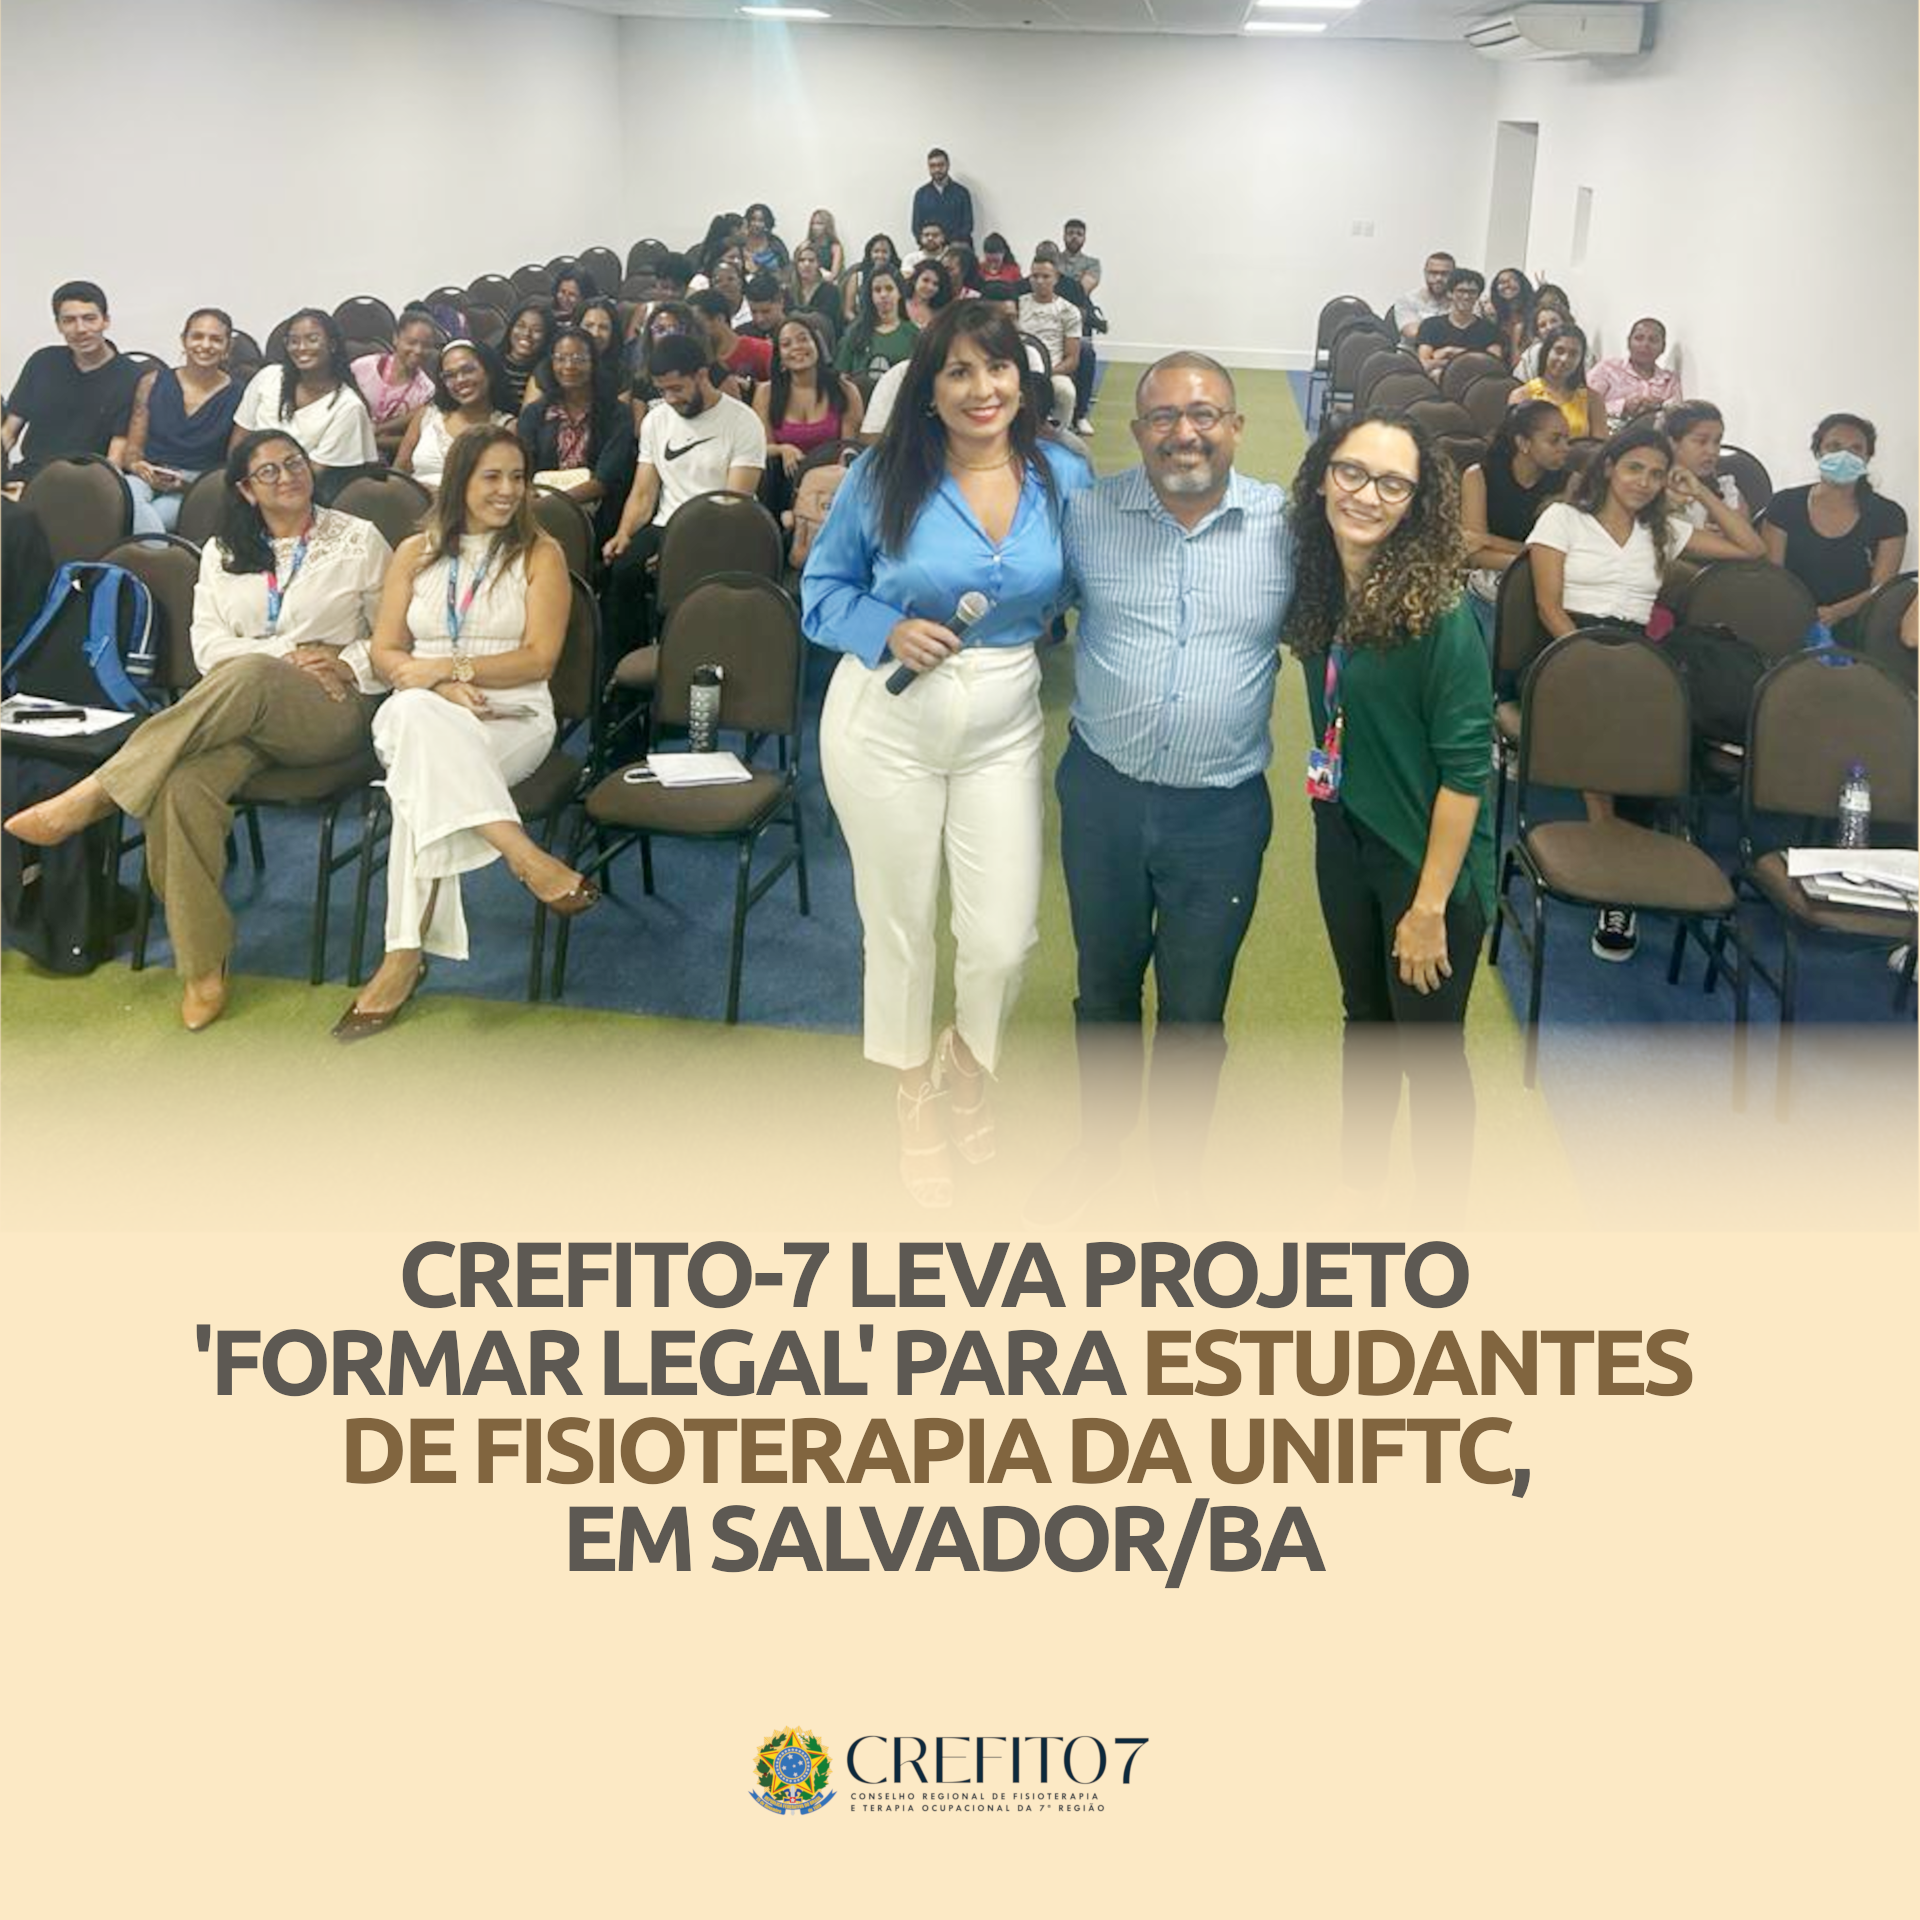 CREFITO-7 LEVA PROJETO ‘FORMAR LEGAL’ PARA ESTUDANTES DE FISIOTERAPIA DA UNIFTC